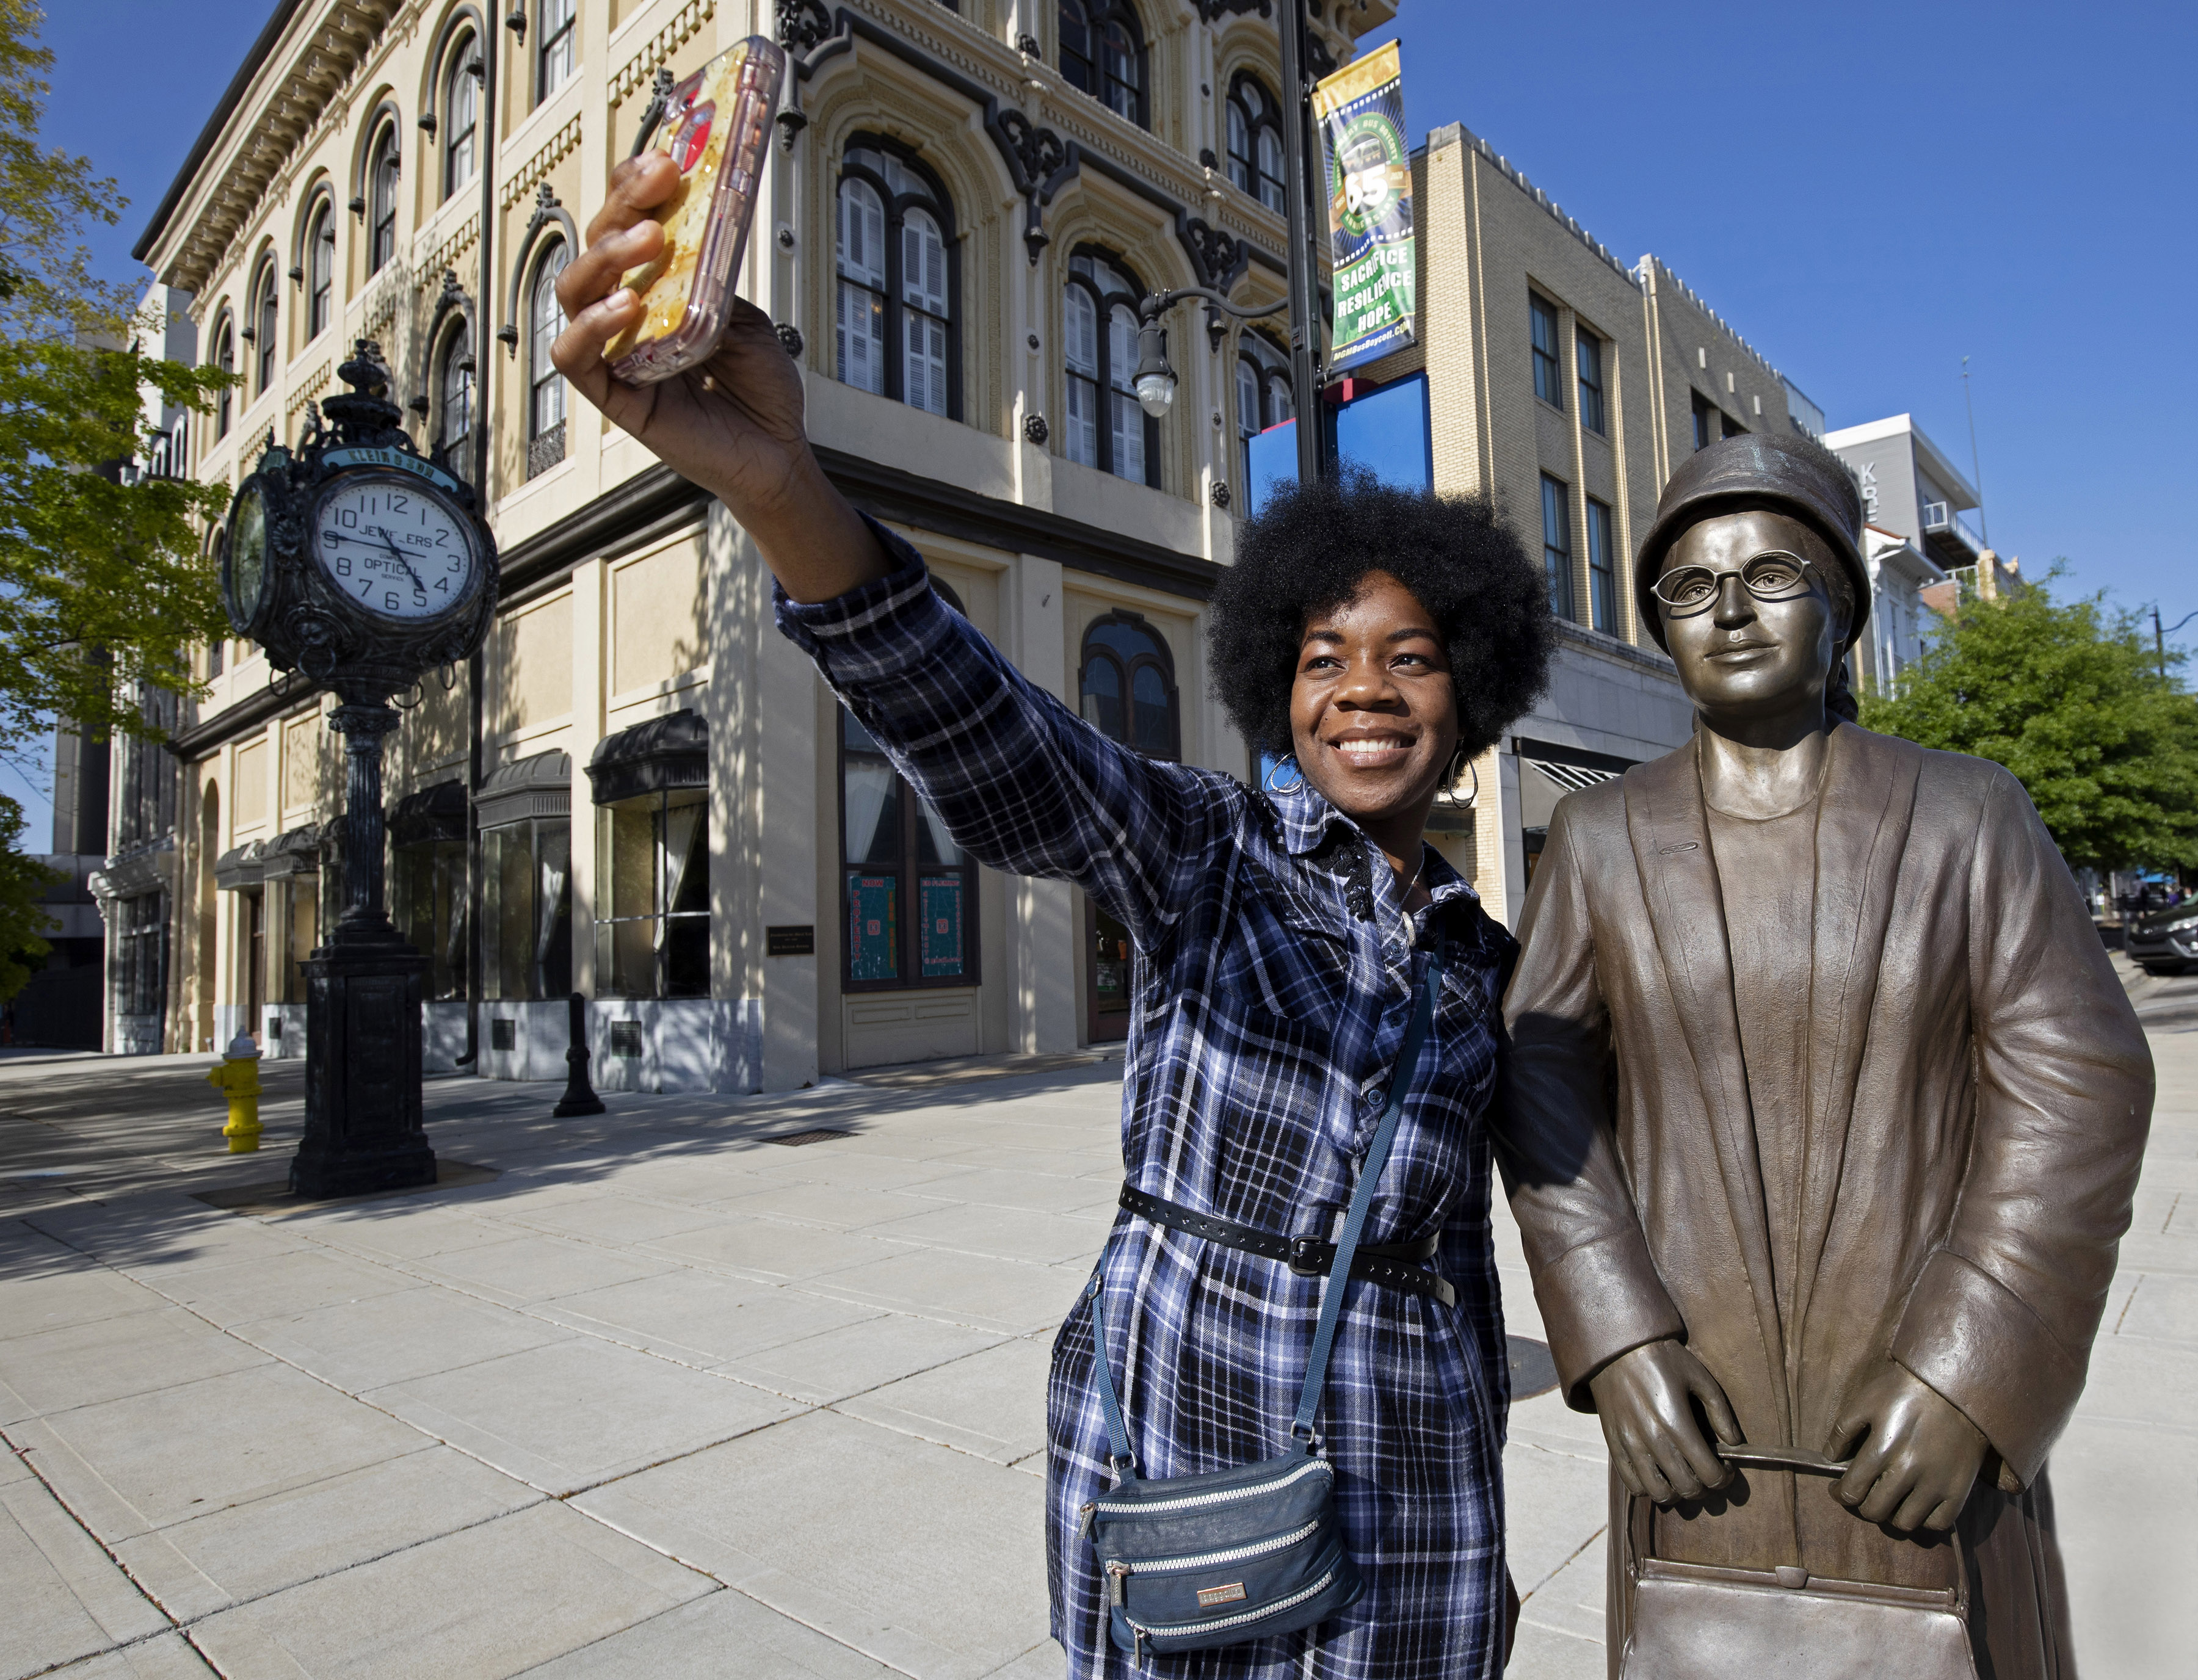  在阿拉巴马州蒙哥马利市中心与罗莎·帕克斯的雕像自拍合影